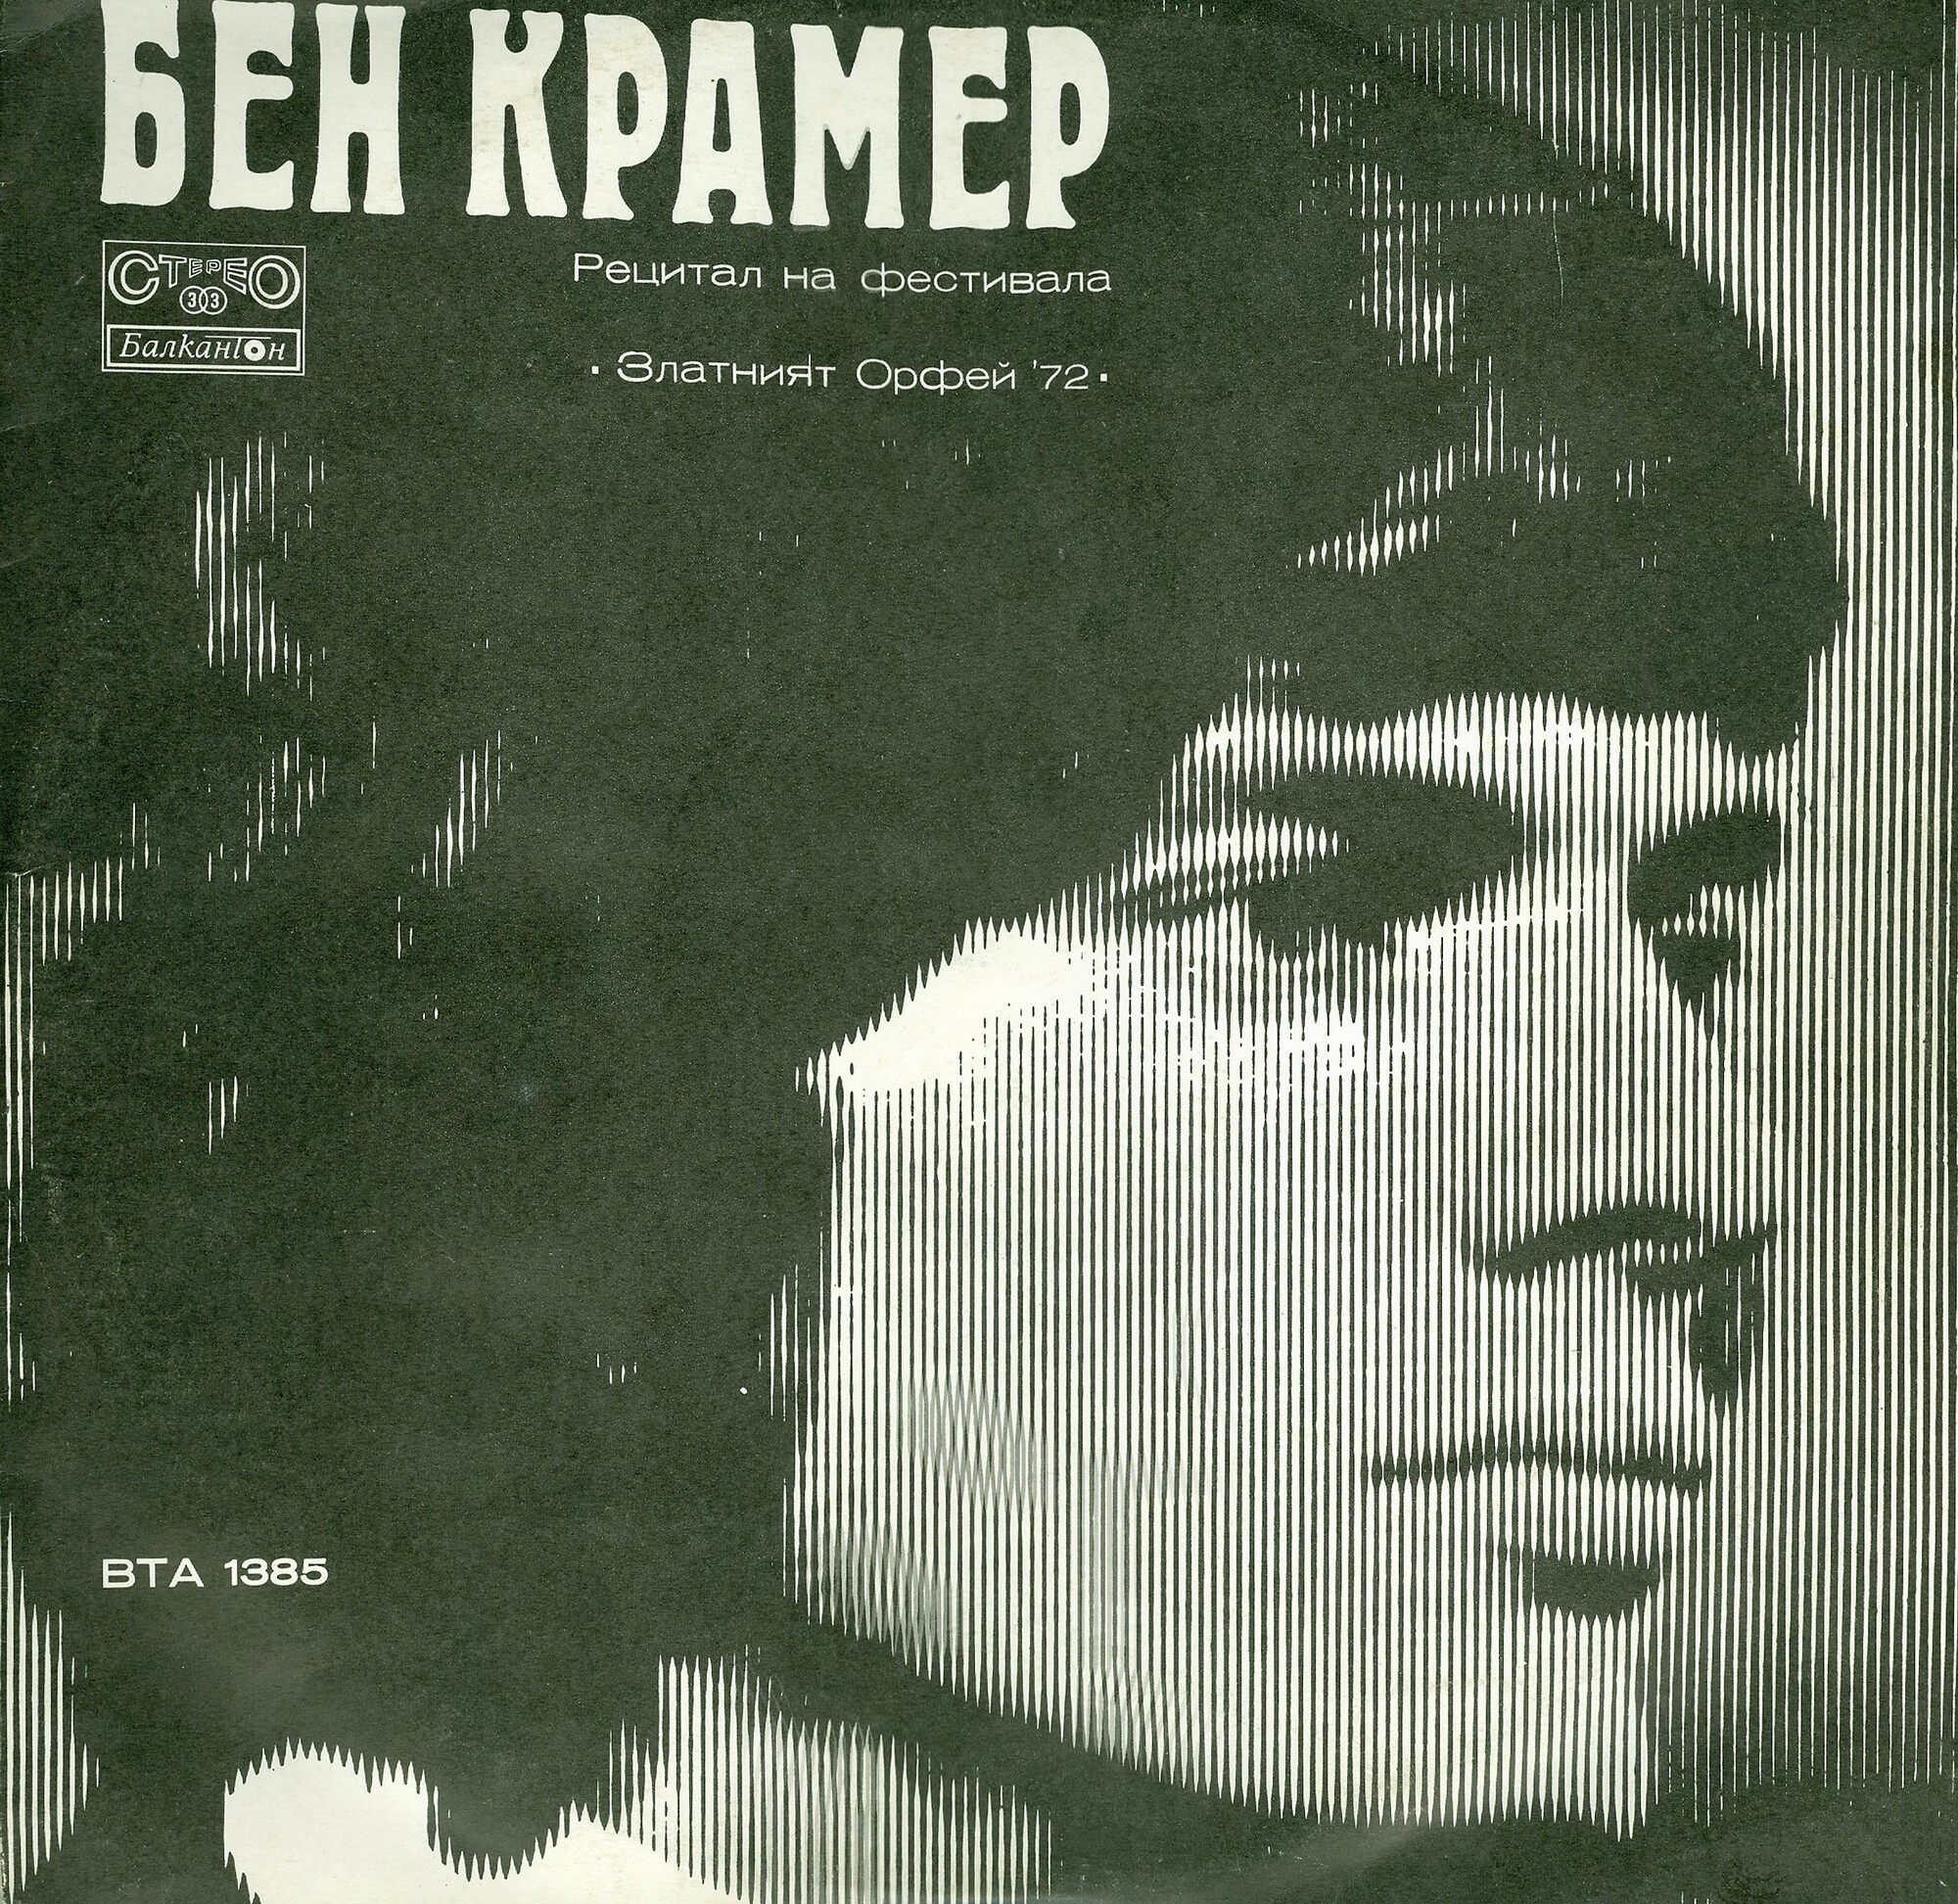 Рецитал на Бен Крамер и вокално-инструментален състав "Дубровнишки трубадури" на фестивала "Златният Орфей '72"